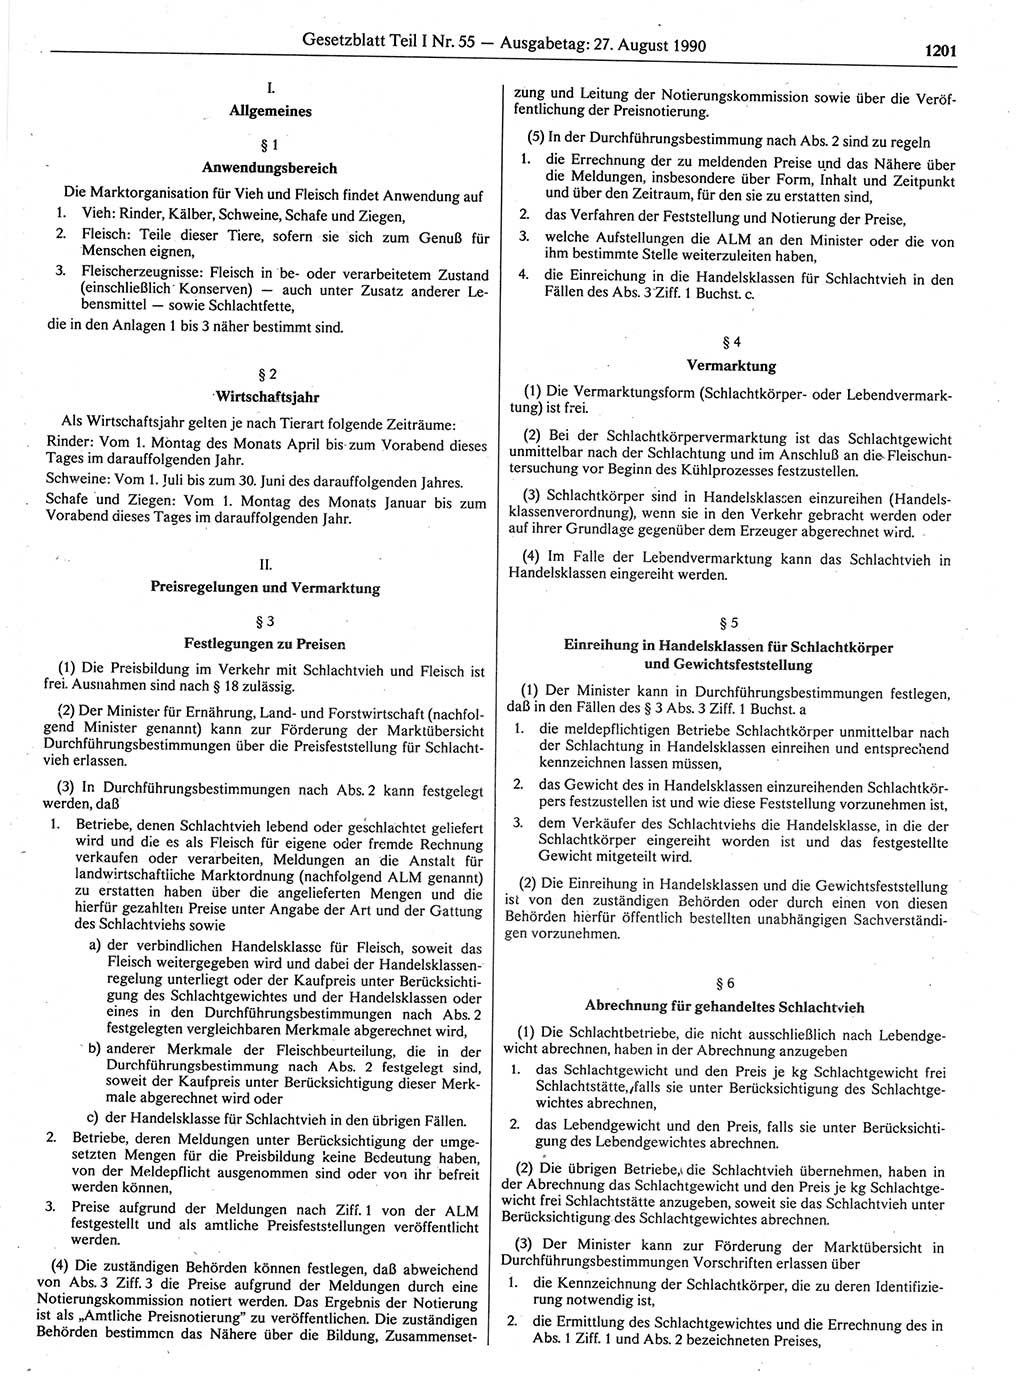 Gesetzblatt (GBl.) der Deutschen Demokratischen Republik (DDR) Teil Ⅰ 1990, Seite 1201 (GBl. DDR Ⅰ 1990, S. 1201)